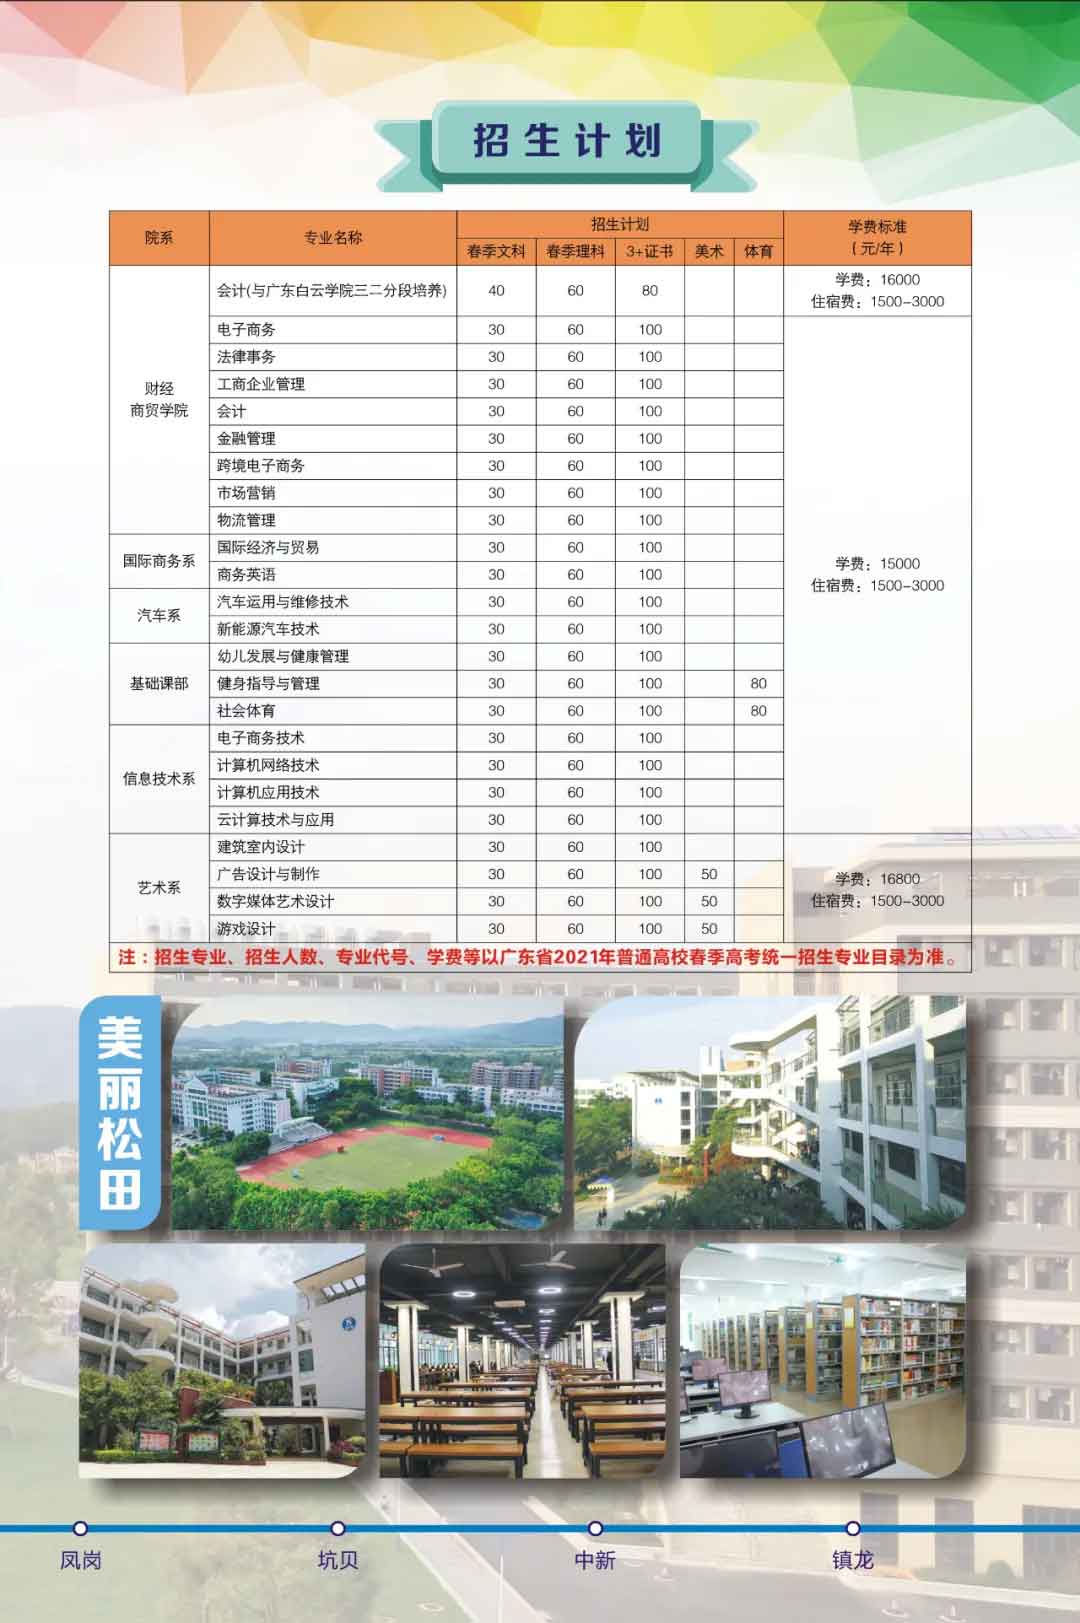 【院校介绍】广州松田职业学院(图2)